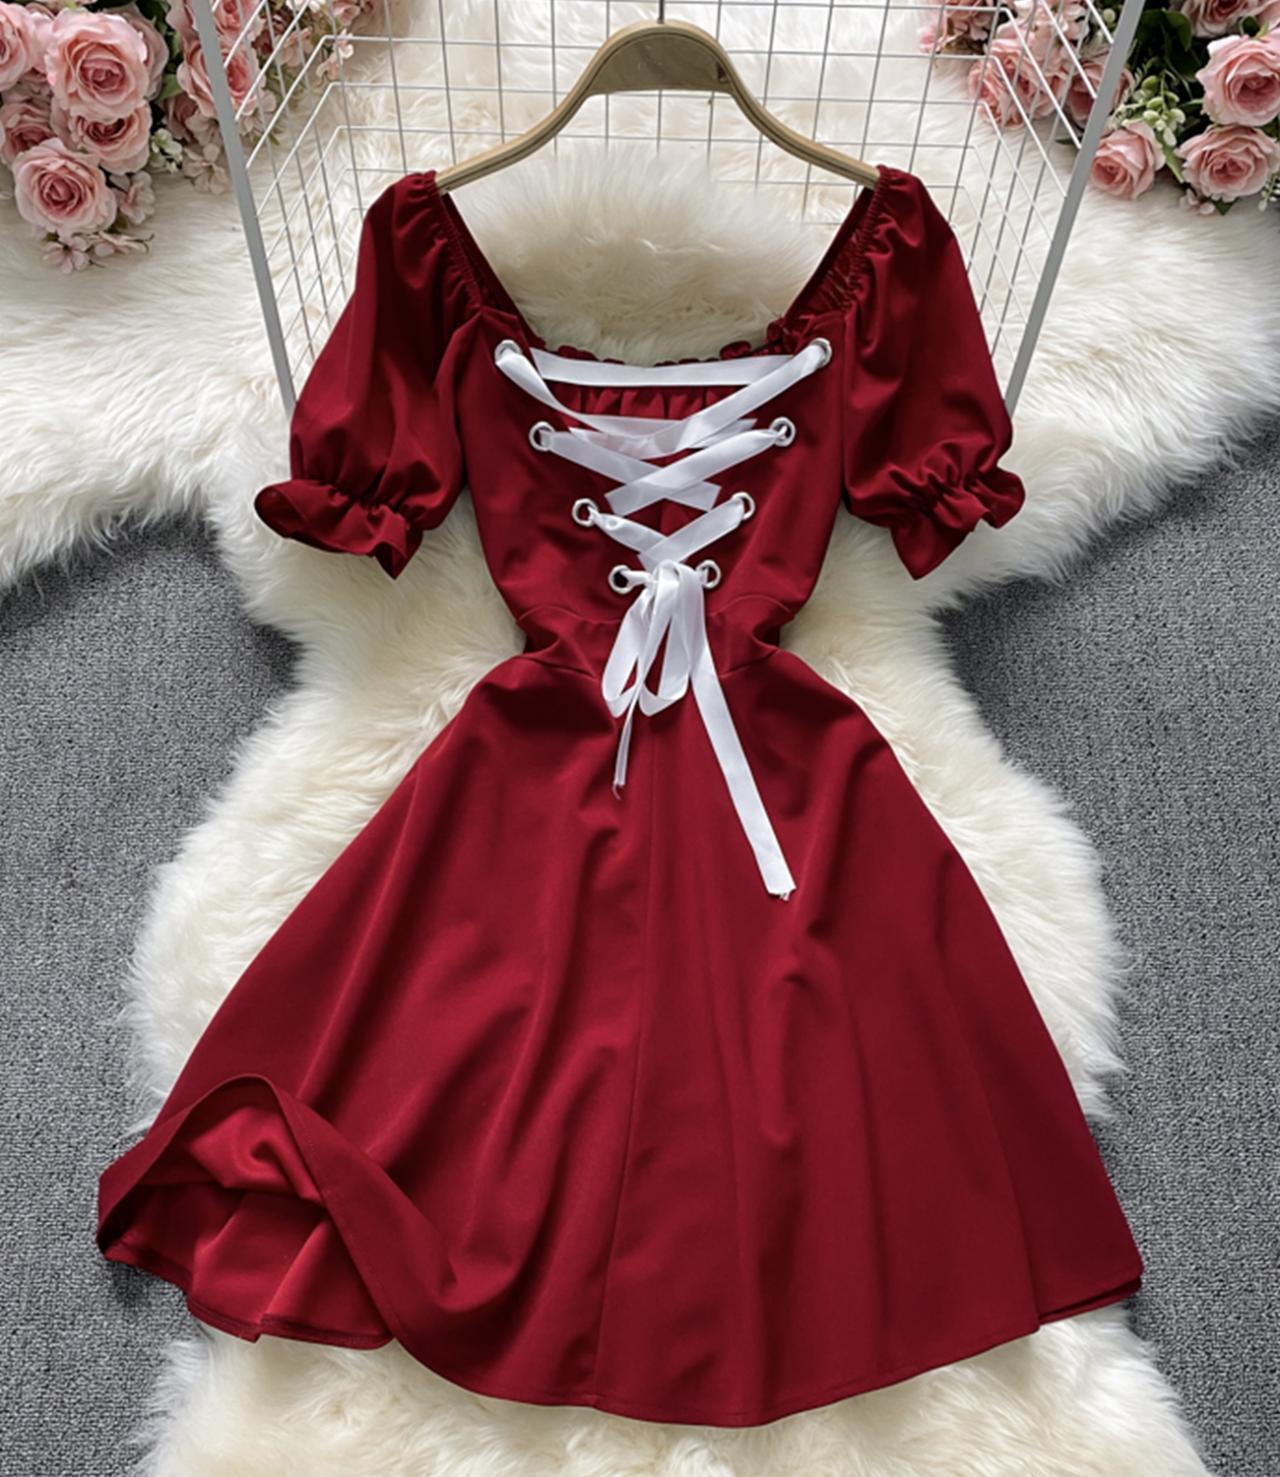 Cute A Line Lace Up Dress Fashion Dress